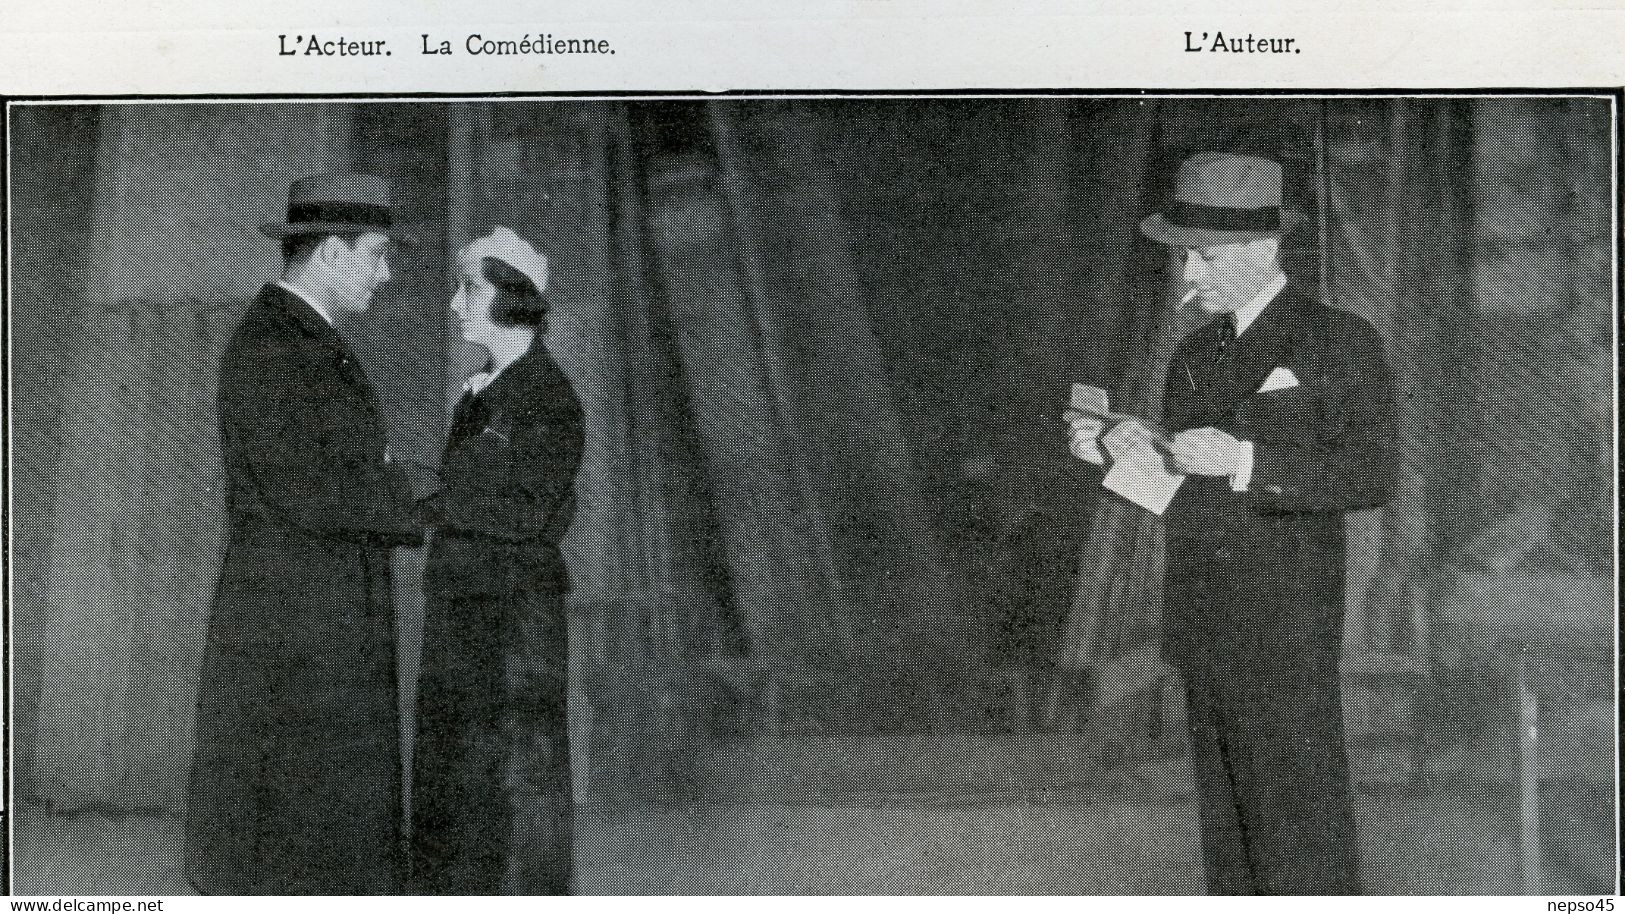 Théâtre des Arts.Crépuscule du Théâtre de M.H.R.Lenormand.Gaston Ougier.Julien Bertheau.Robert Dock.Jean Fleur.